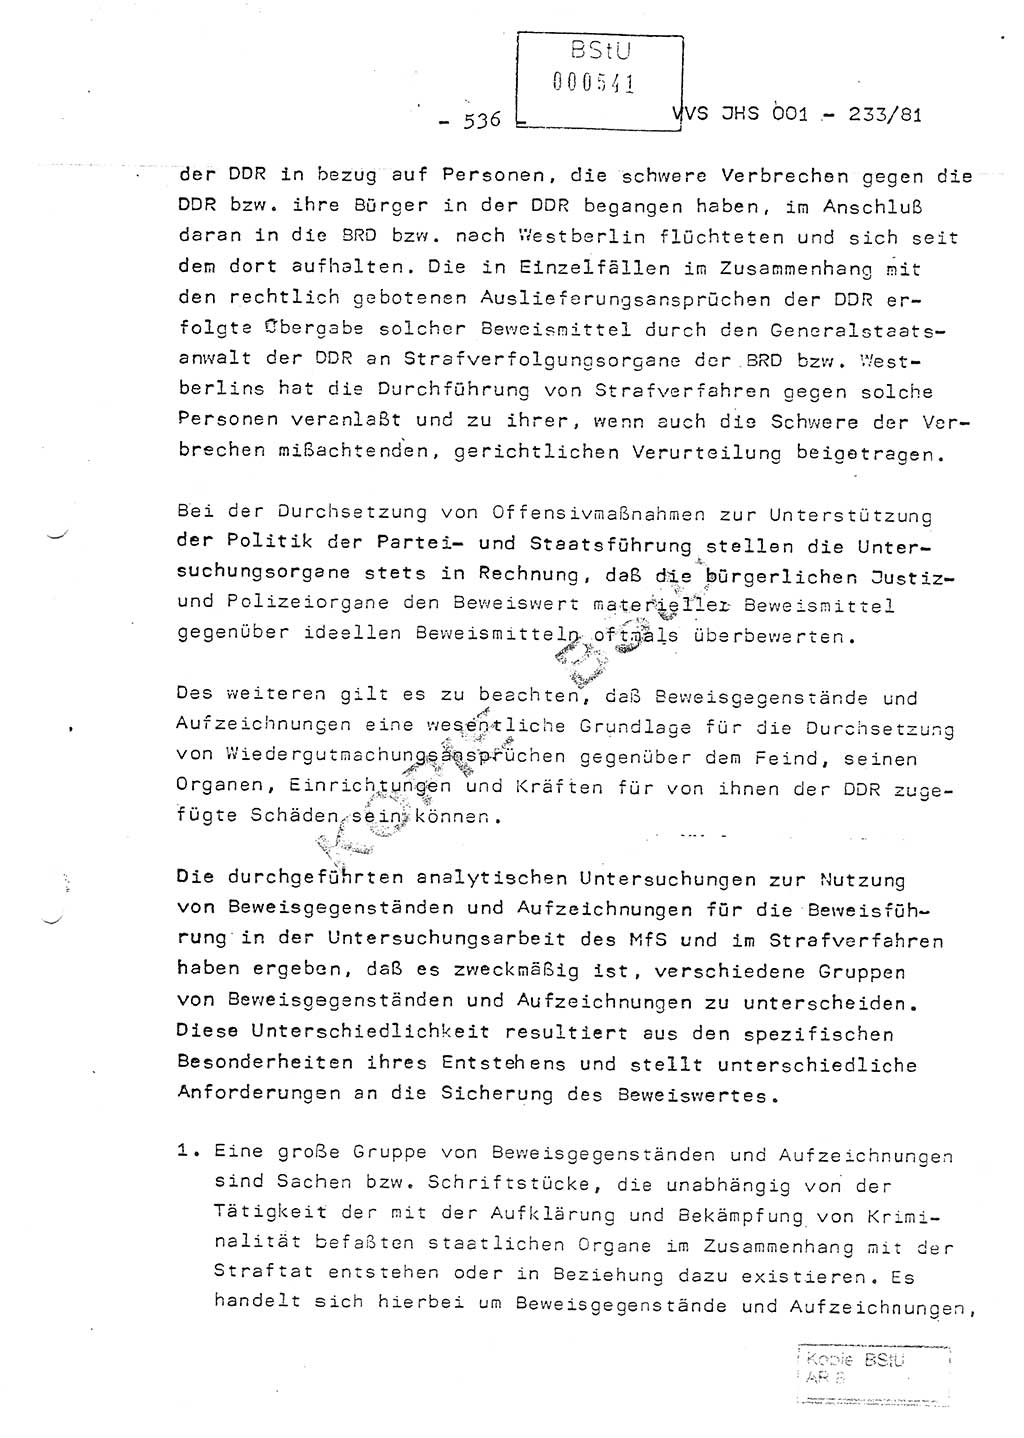 Dissertation Oberstleutnant Horst Zank (JHS), Oberstleutnant Dr. Karl-Heinz Knoblauch (JHS), Oberstleutnant Gustav-Adolf Kowalewski (HA Ⅸ), Oberstleutnant Wolfgang Plötner (HA Ⅸ), Ministerium für Staatssicherheit (MfS) [Deutsche Demokratische Republik (DDR)], Juristische Hochschule (JHS), Vertrauliche Verschlußsache (VVS) o001-233/81, Potsdam 1981, Blatt 536 (Diss. MfS DDR JHS VVS o001-233/81 1981, Bl. 536)